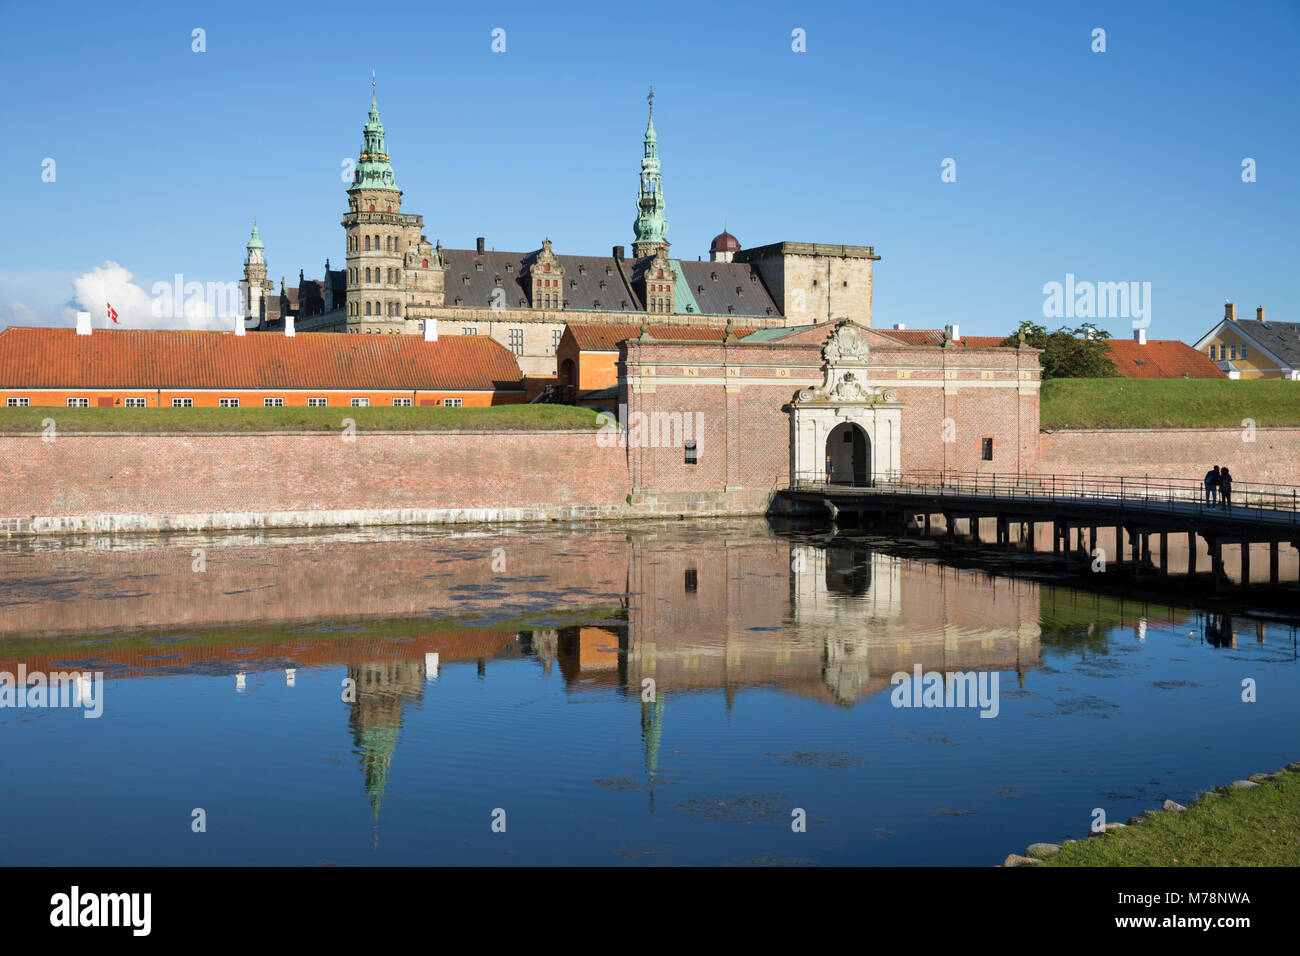 Vue sur moat à porte d'entrée du Château de Kronborg est utilisé dans le cadre d'Hamlet de Shakespeare, Helsingor, Danemark, Scandinavie, Europe Banque D'Images